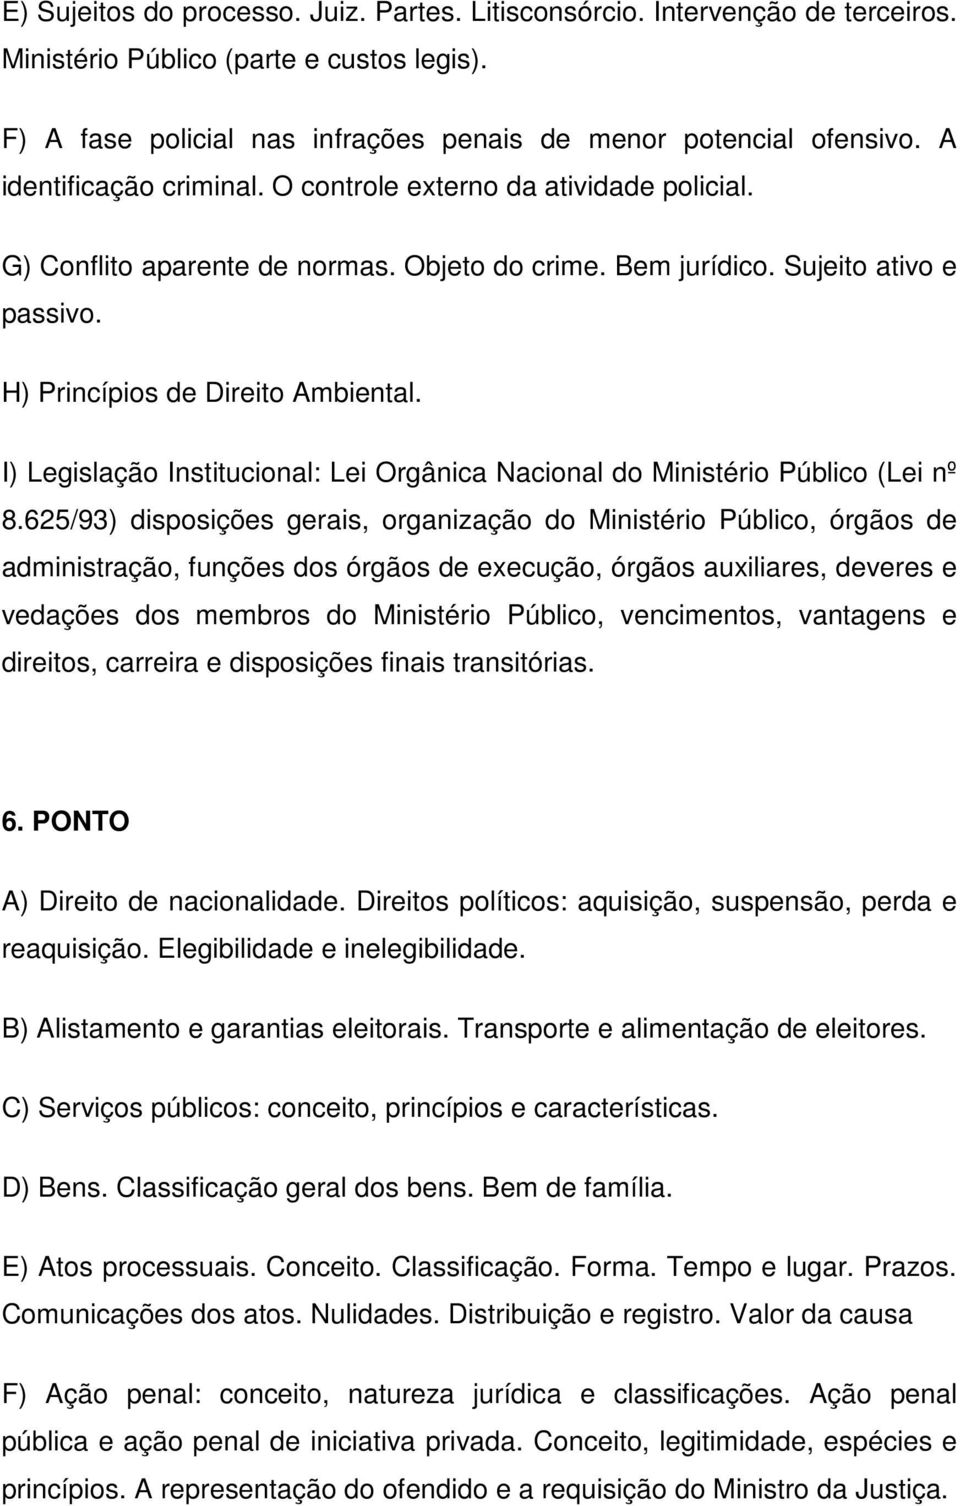 I) Legislação Institucional: Lei Orgânica Nacional do Ministério Público (Lei nº 8.